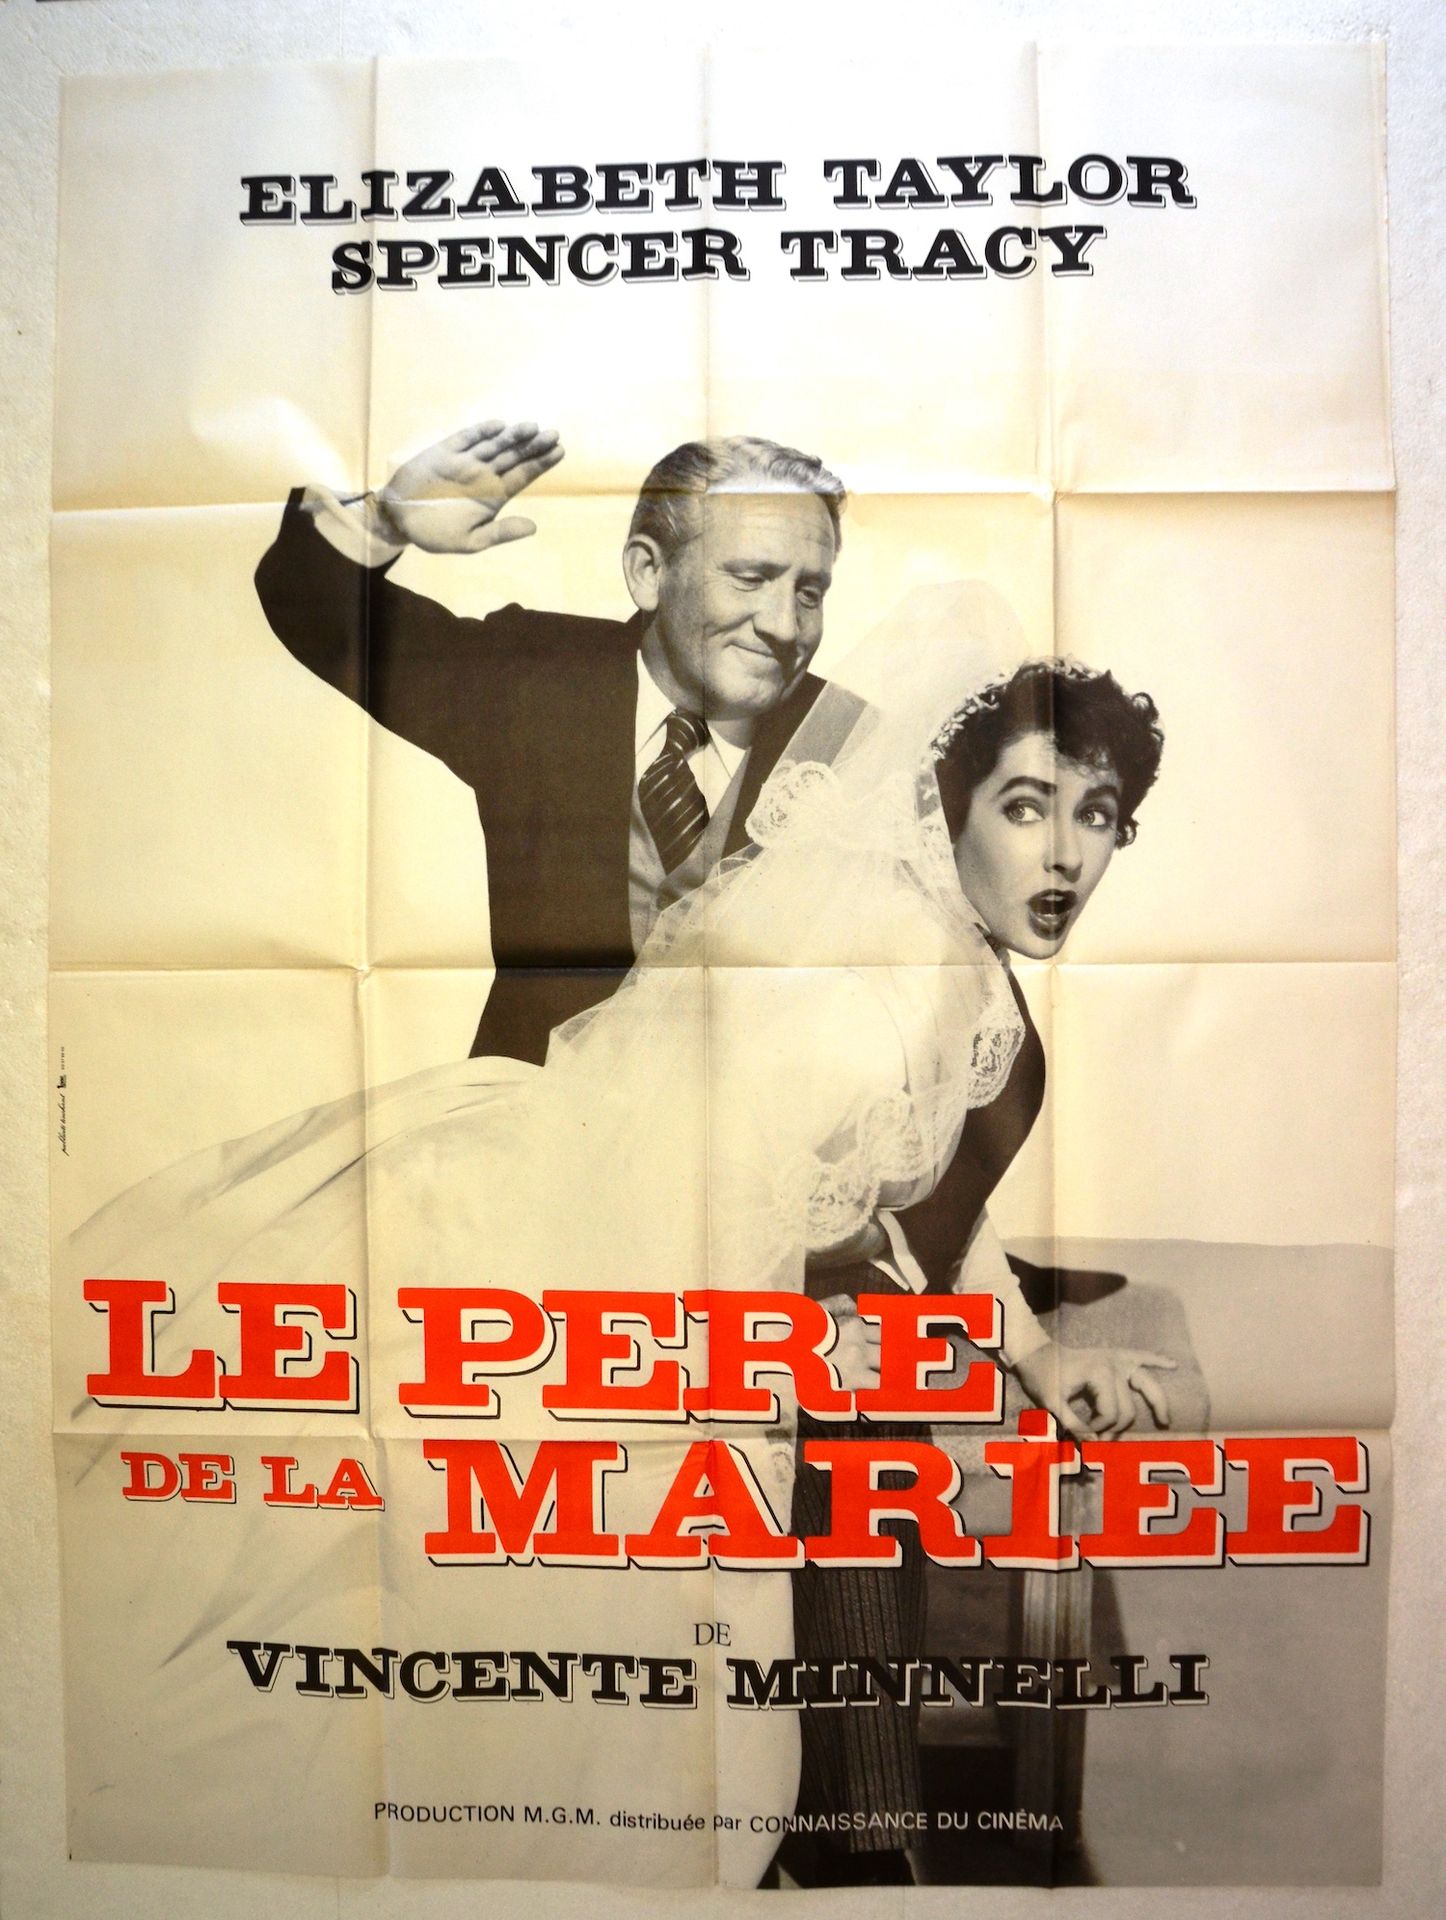 Null 新娘的父亲
年份: 1950年，法国海报
导演: 文森特-明纳利
演员：斯宾塞-特雷西和琼-贝内特
工作室：M.G.C
打印：IPAC/120 x 1&hellip;